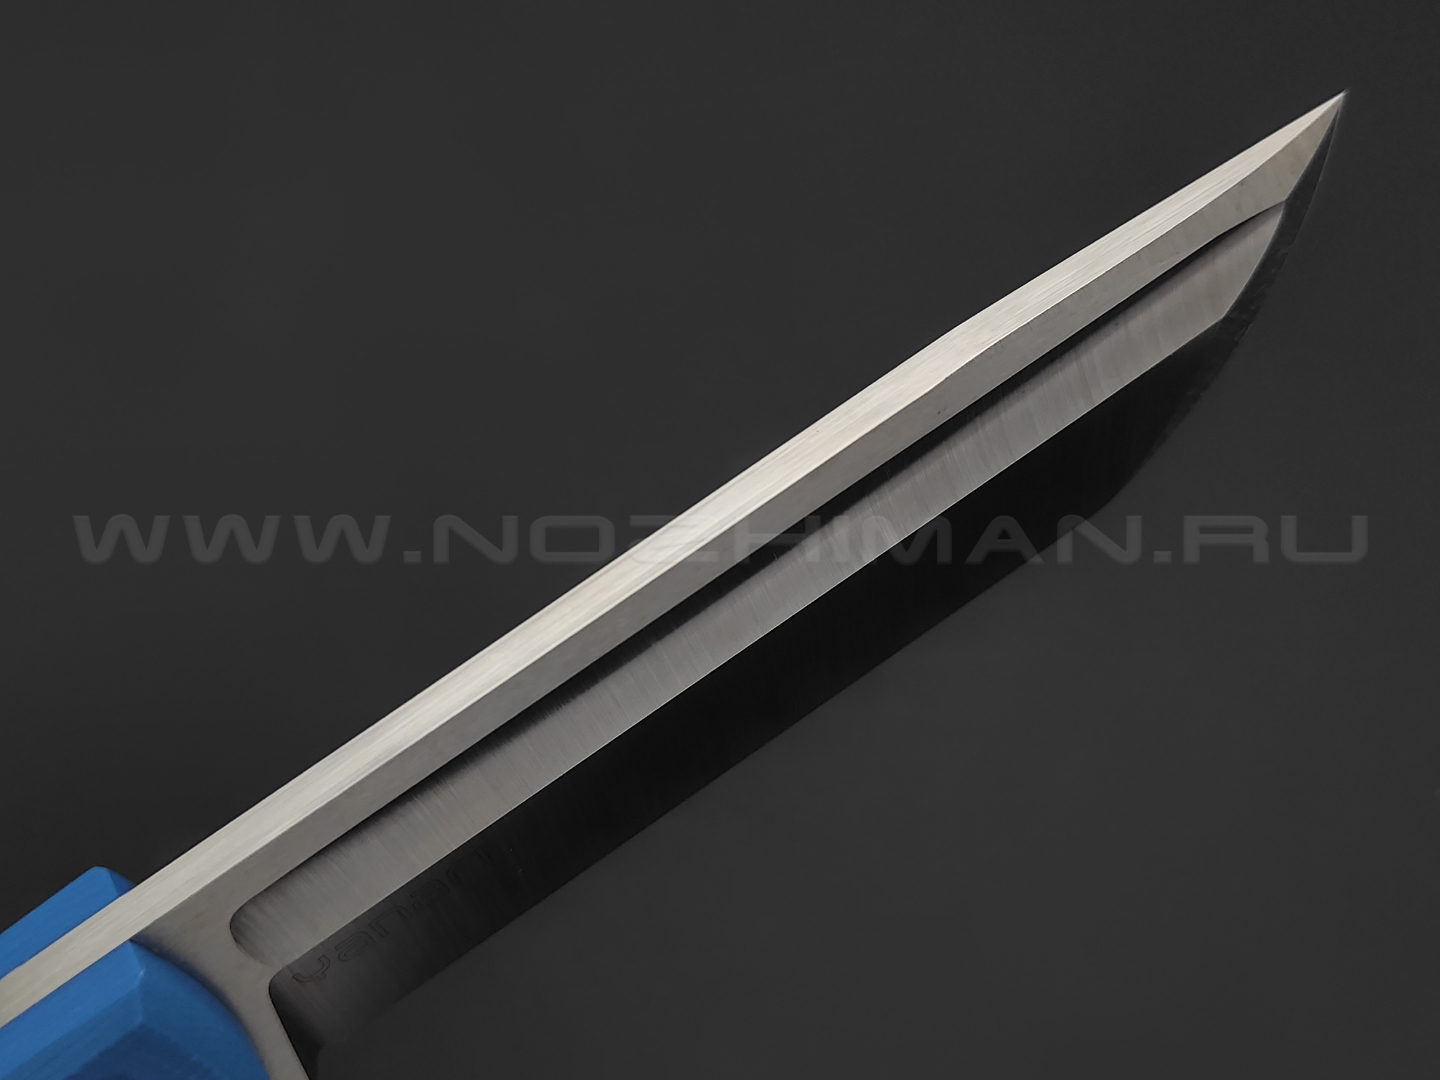 Нож Yanari средний сталь VG-10, рукоять G10 blue , ножны kydex grey